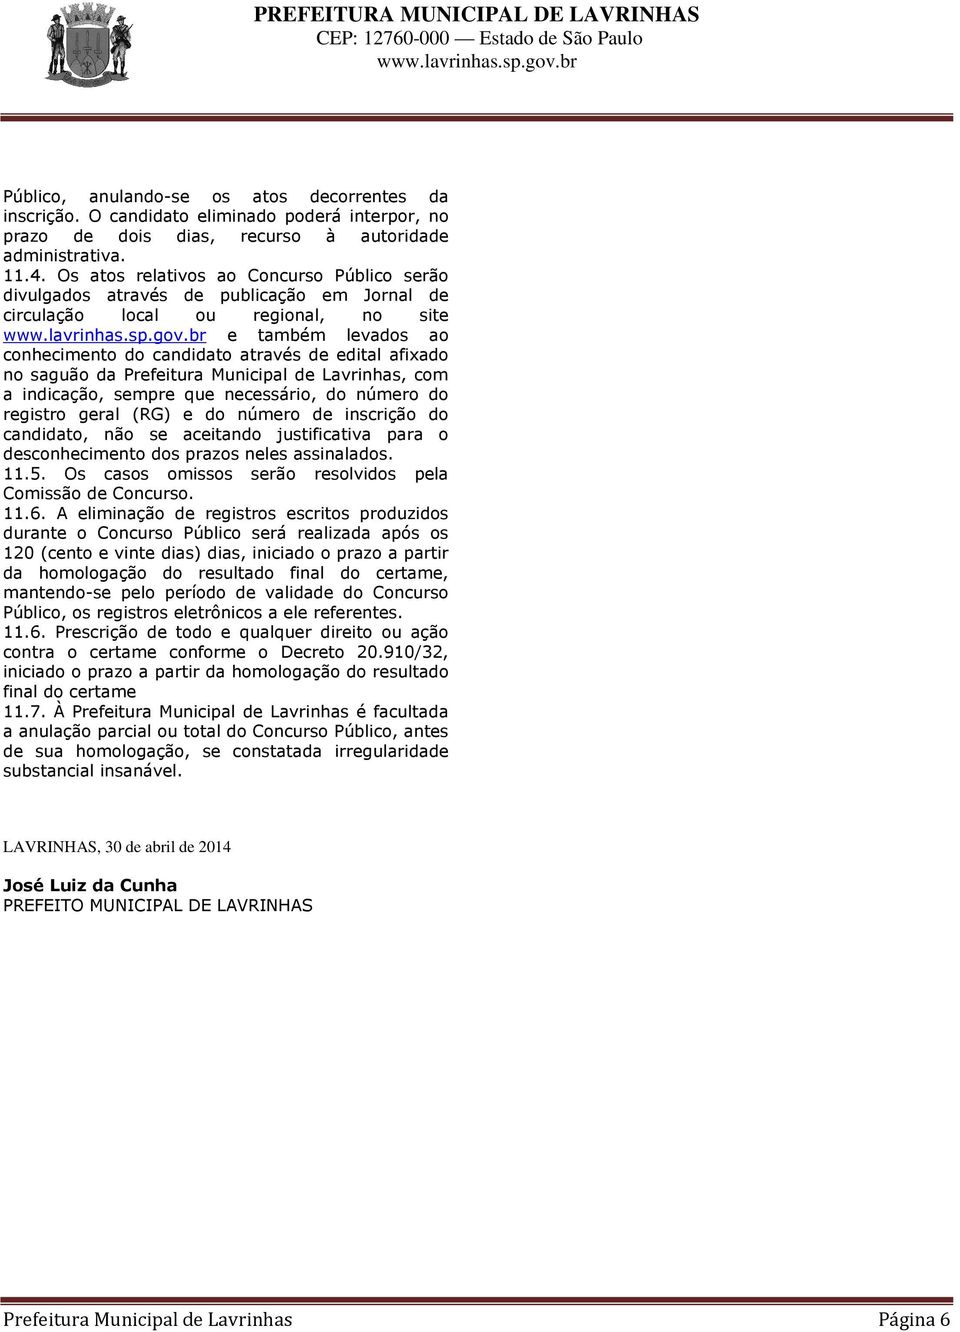 Os atos relativos ao Concurso Público serão divulgados através de publicação em Jornal de circulação local ou regional, no site www.lavrinhas.sp.gov.